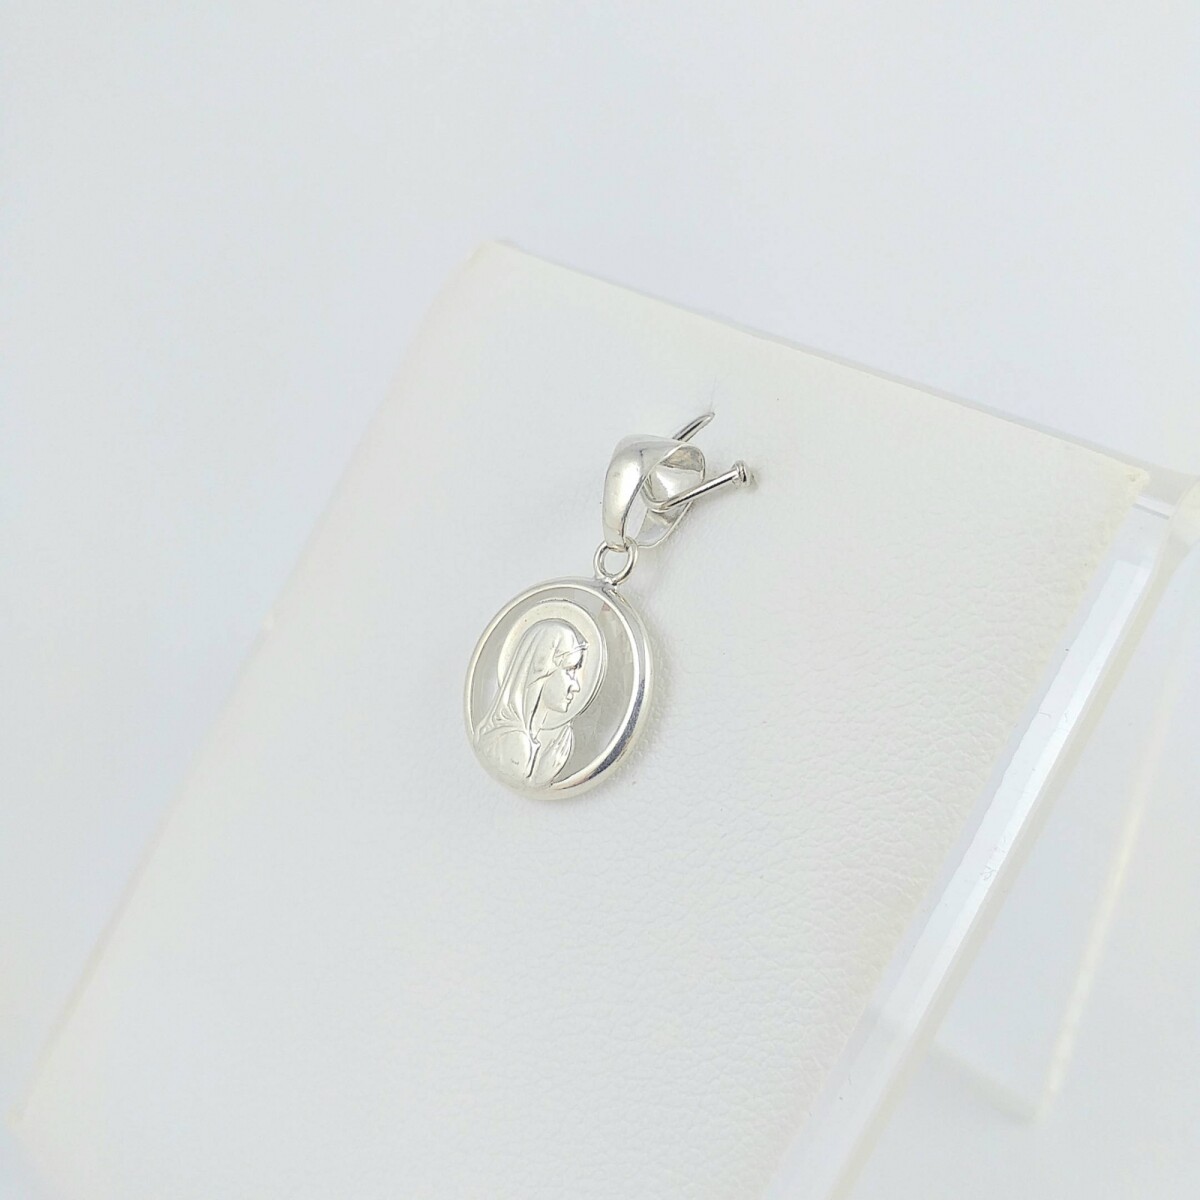 Medalla religiosa de plata 925 Virgen Niña cristal con manto, diámetro 12mm. 